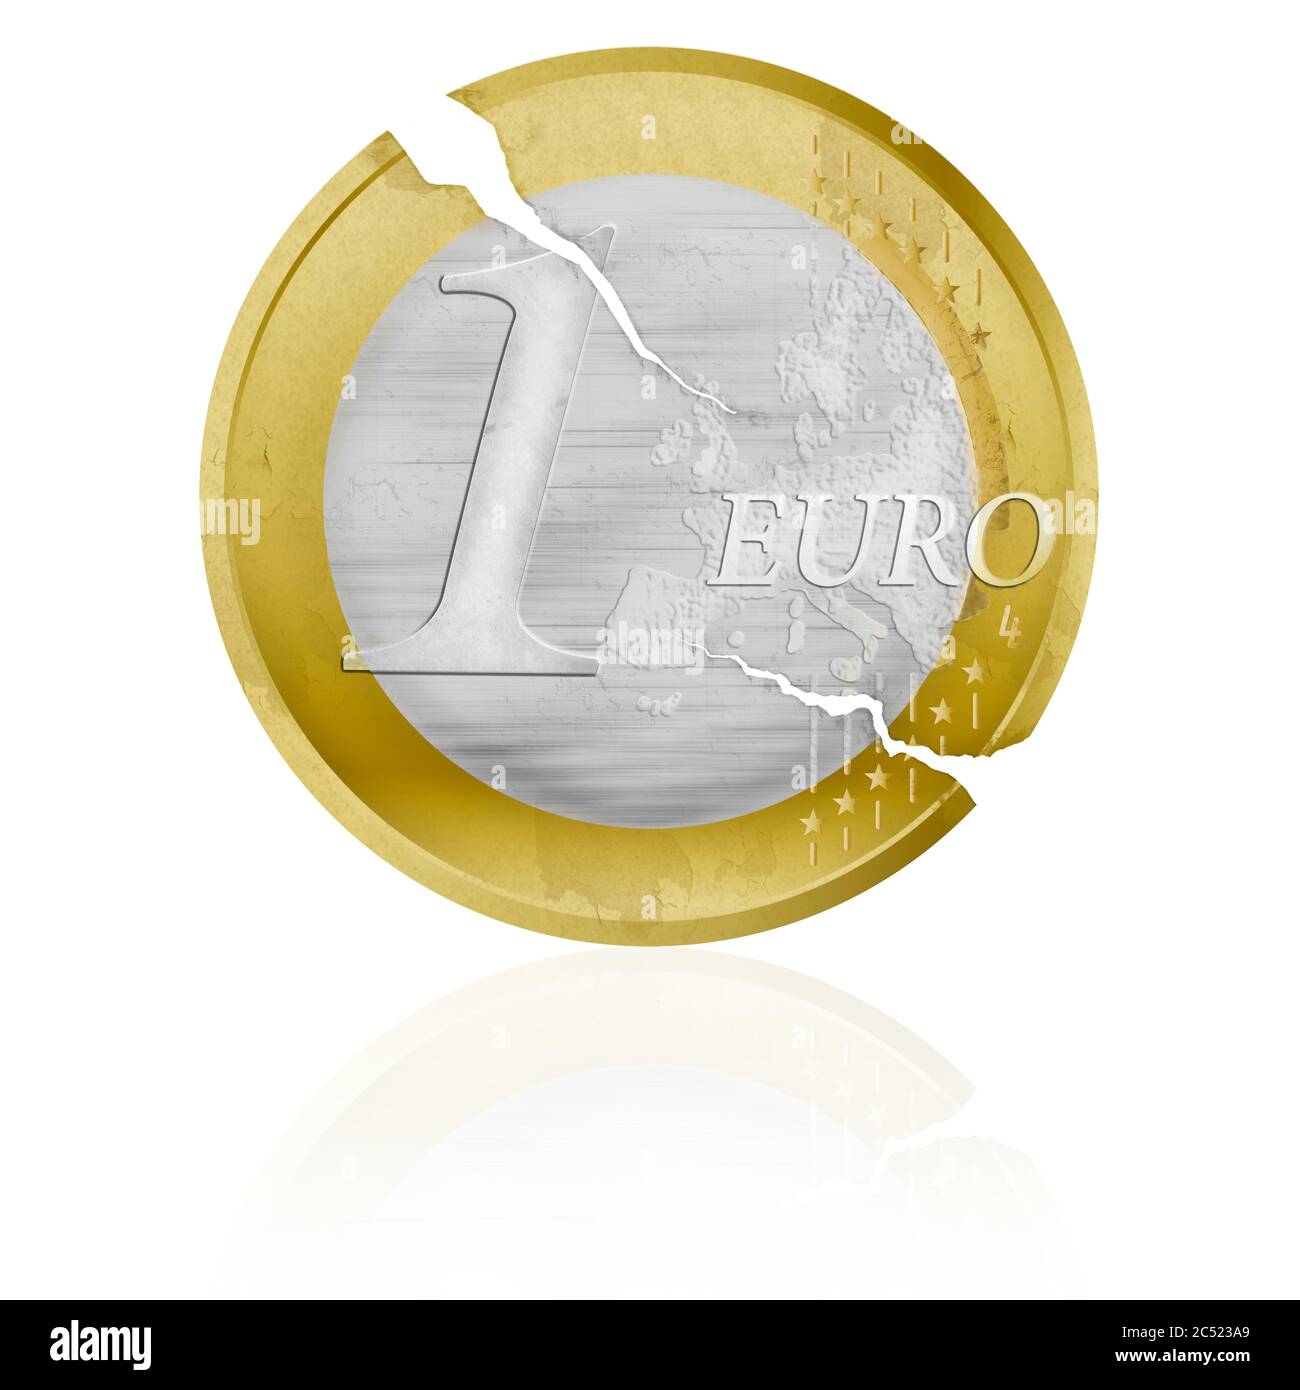 Una vecchia moneta dell'euro, che era già intemperata, simboleggia la crisi nell'Unione europea Foto Stock